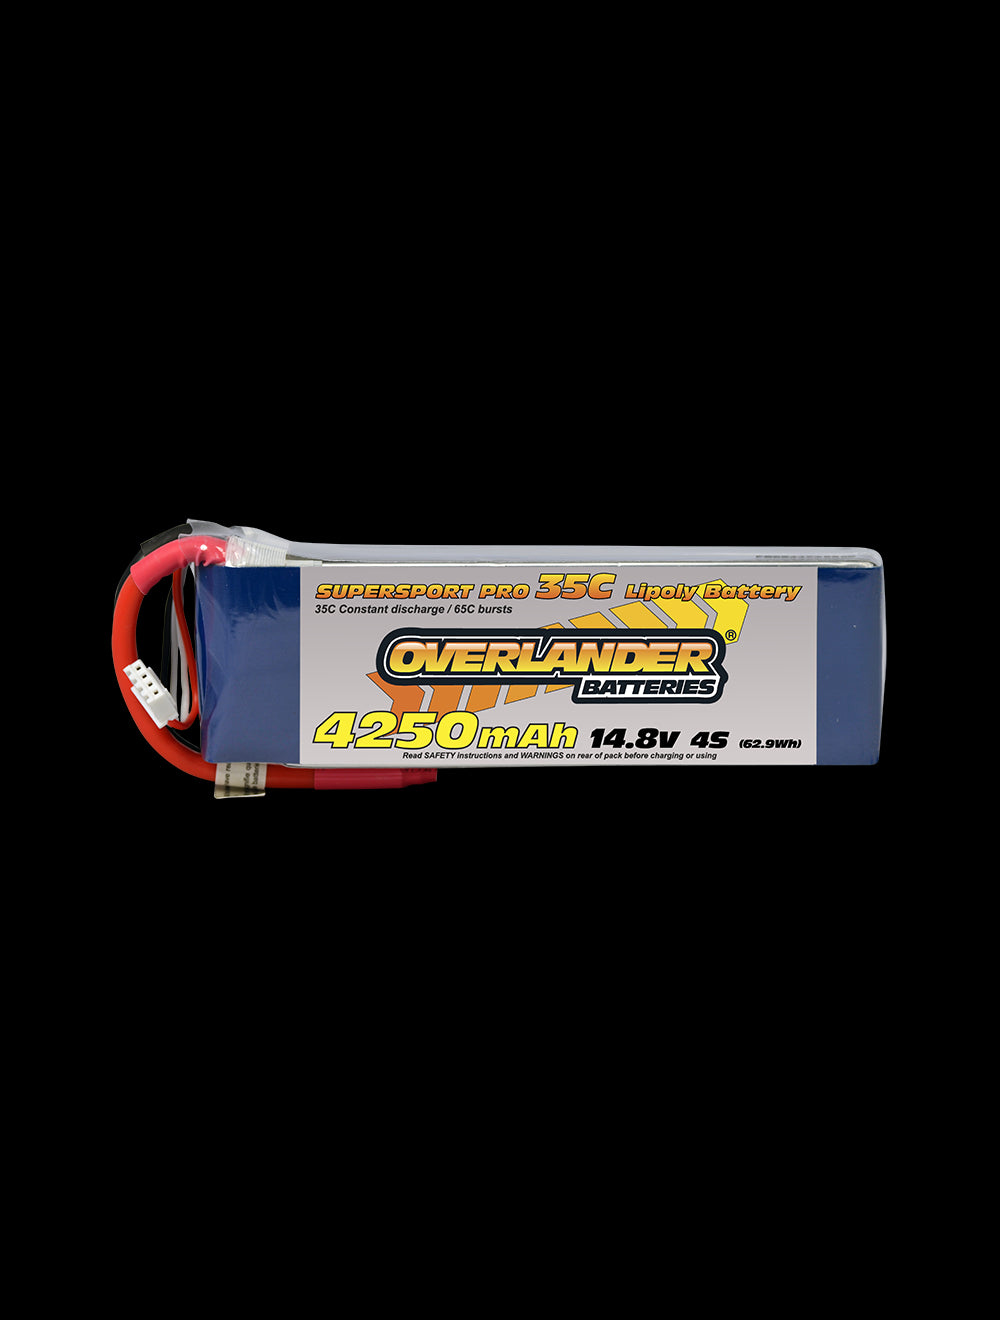 Overlander 4250mAh 14.8V 4S 35C Supersport Pro LiPo Battery - EC5 Connector 2476